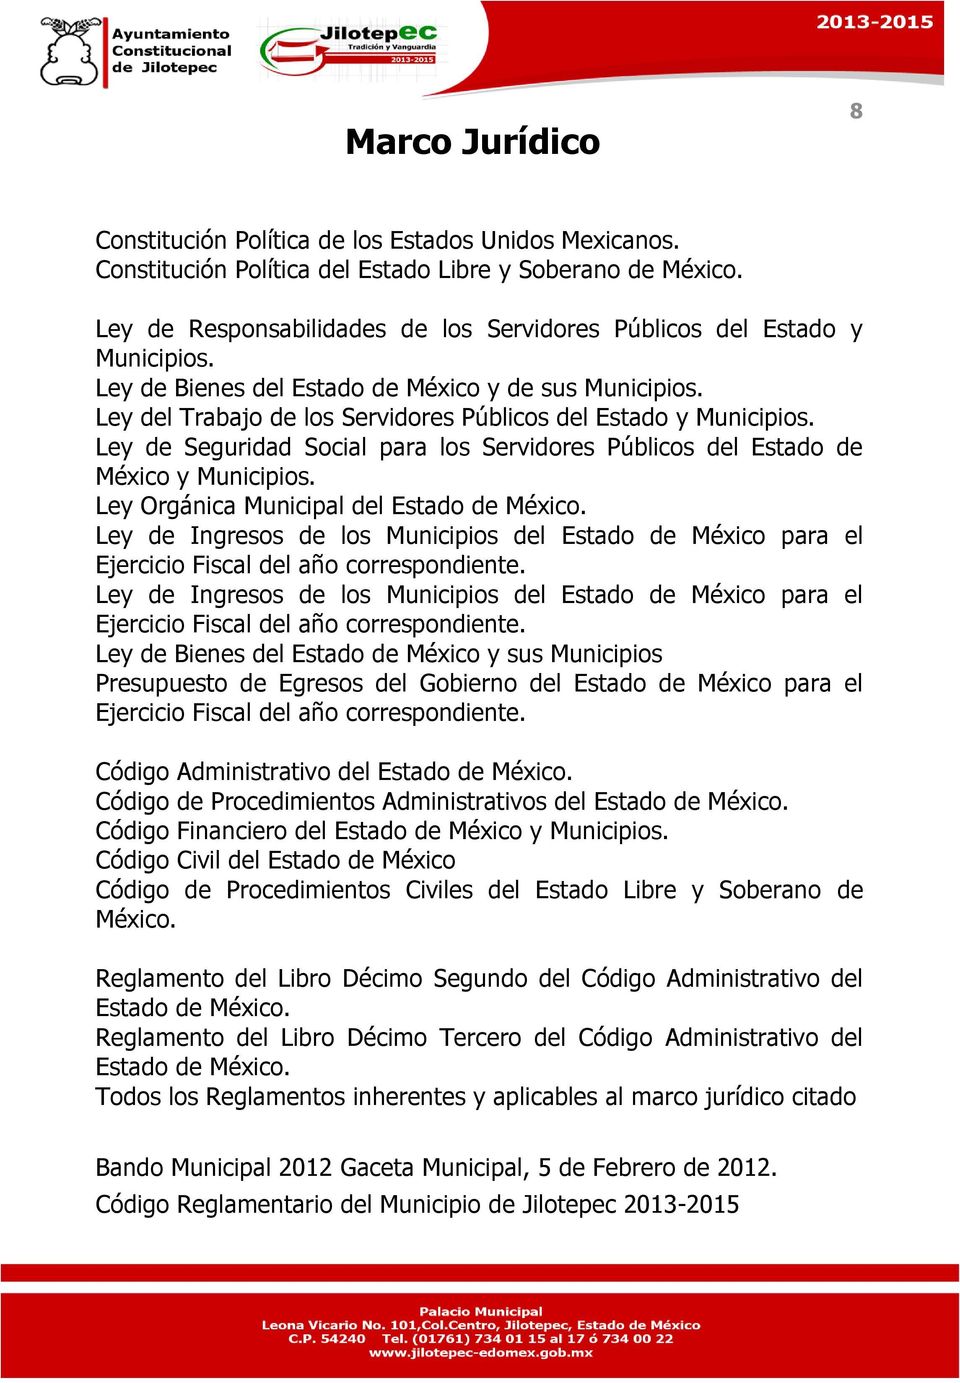 Ley de Seguridad Social para los Servidores Públicos del Estado de México y Municipios. Ley Orgánica Municipal del Estado de México.